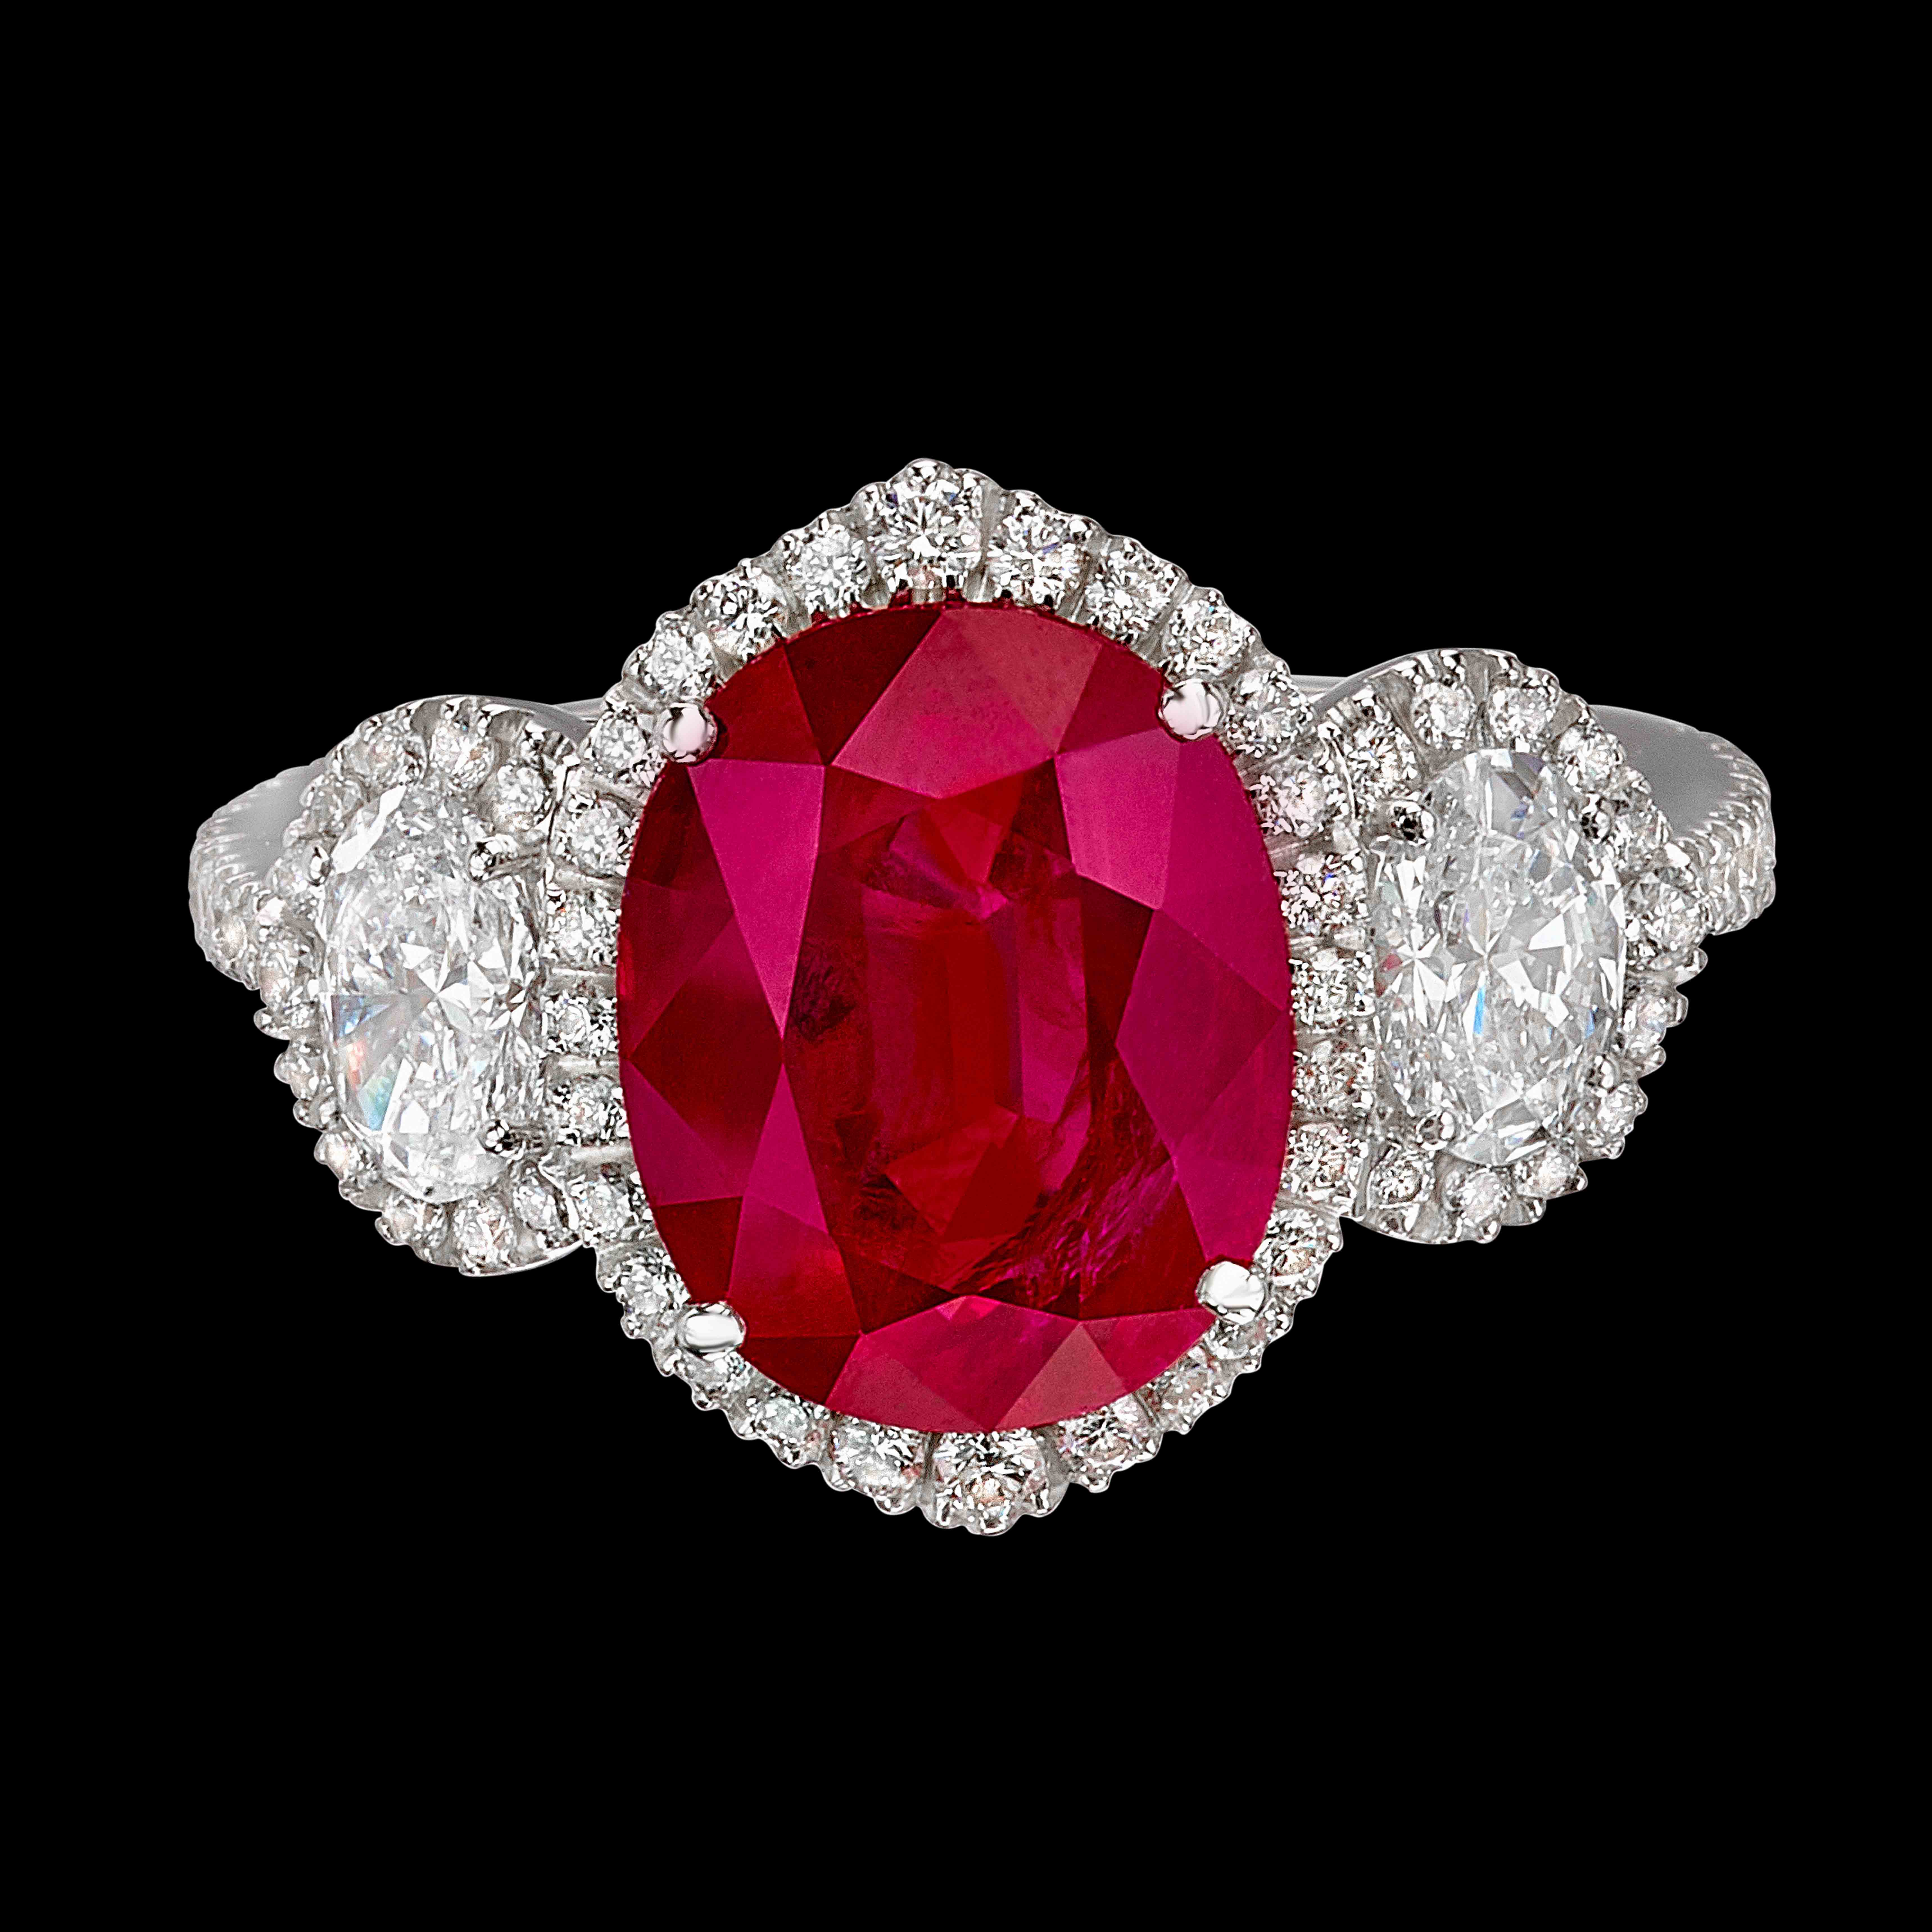 Massimo Raiteri Exclusive Jewelry classic design timeless classici senza tempo rubino rubini ruby sapphire zaffiri emerald ring anelli anello diamanti mezzalune moon